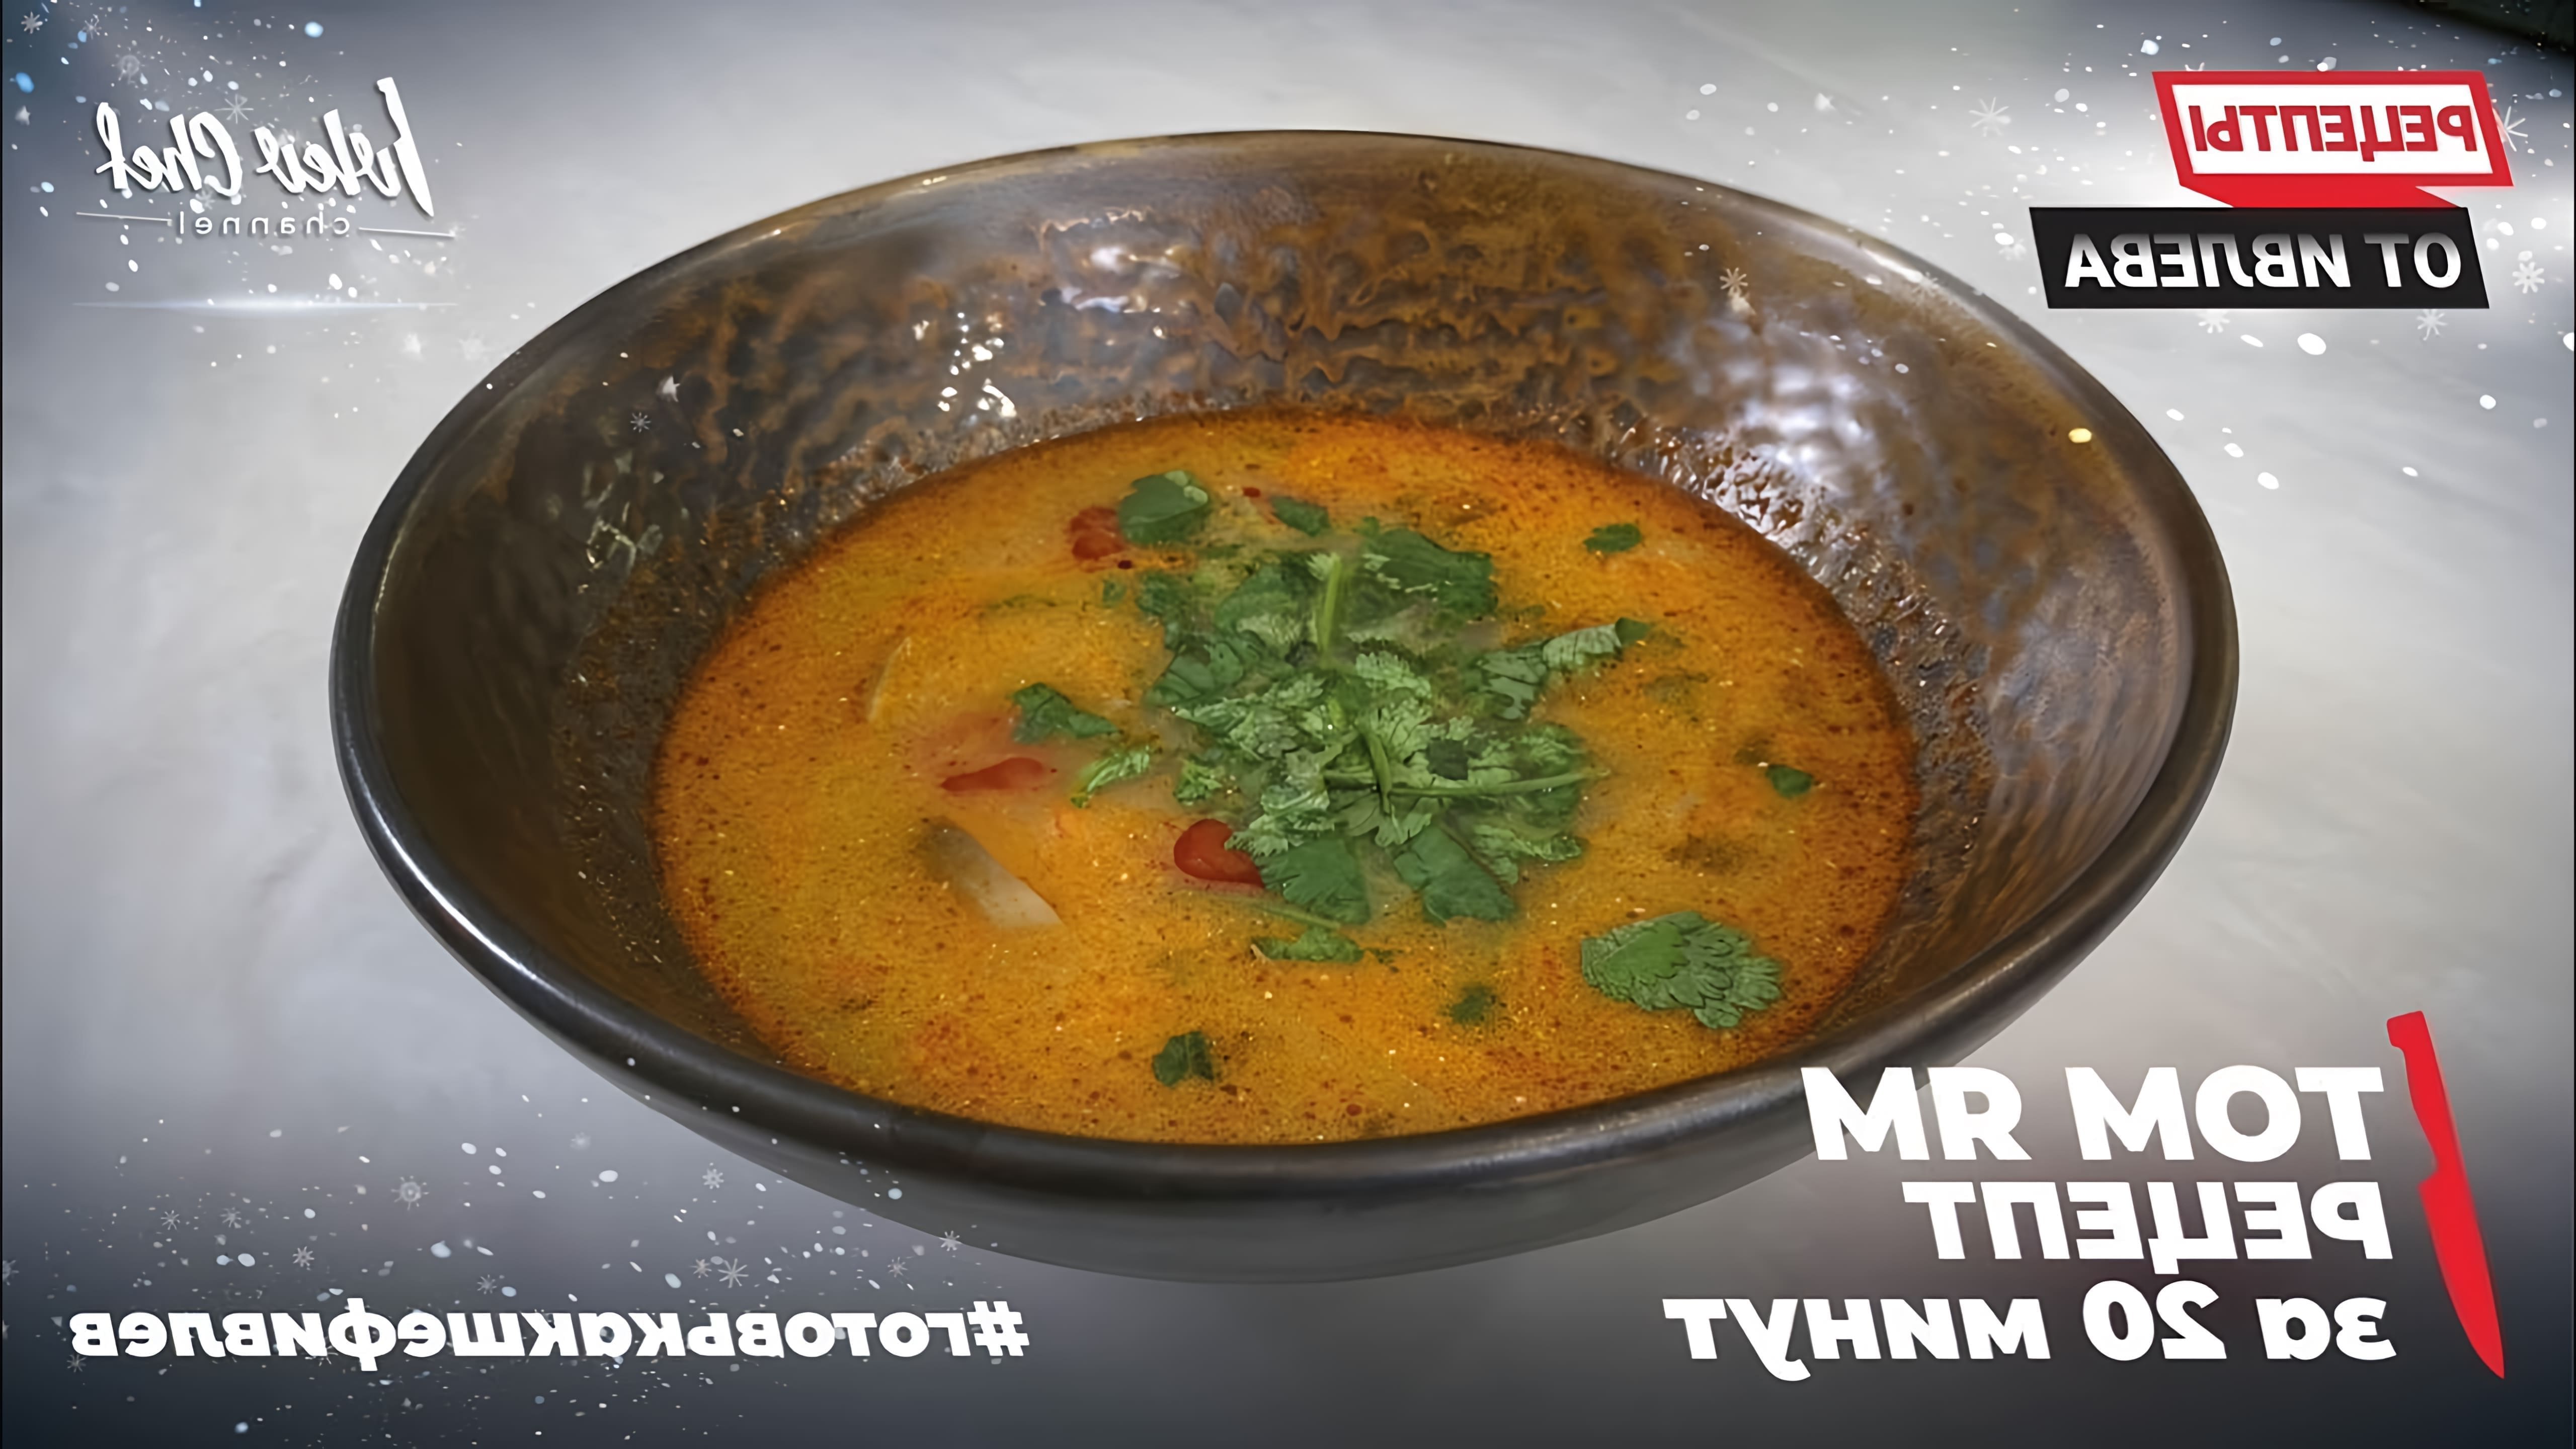 В этом видео Константин Ивлев показывает, как приготовить том ям - популярный тайский суп - всего за 20 минут